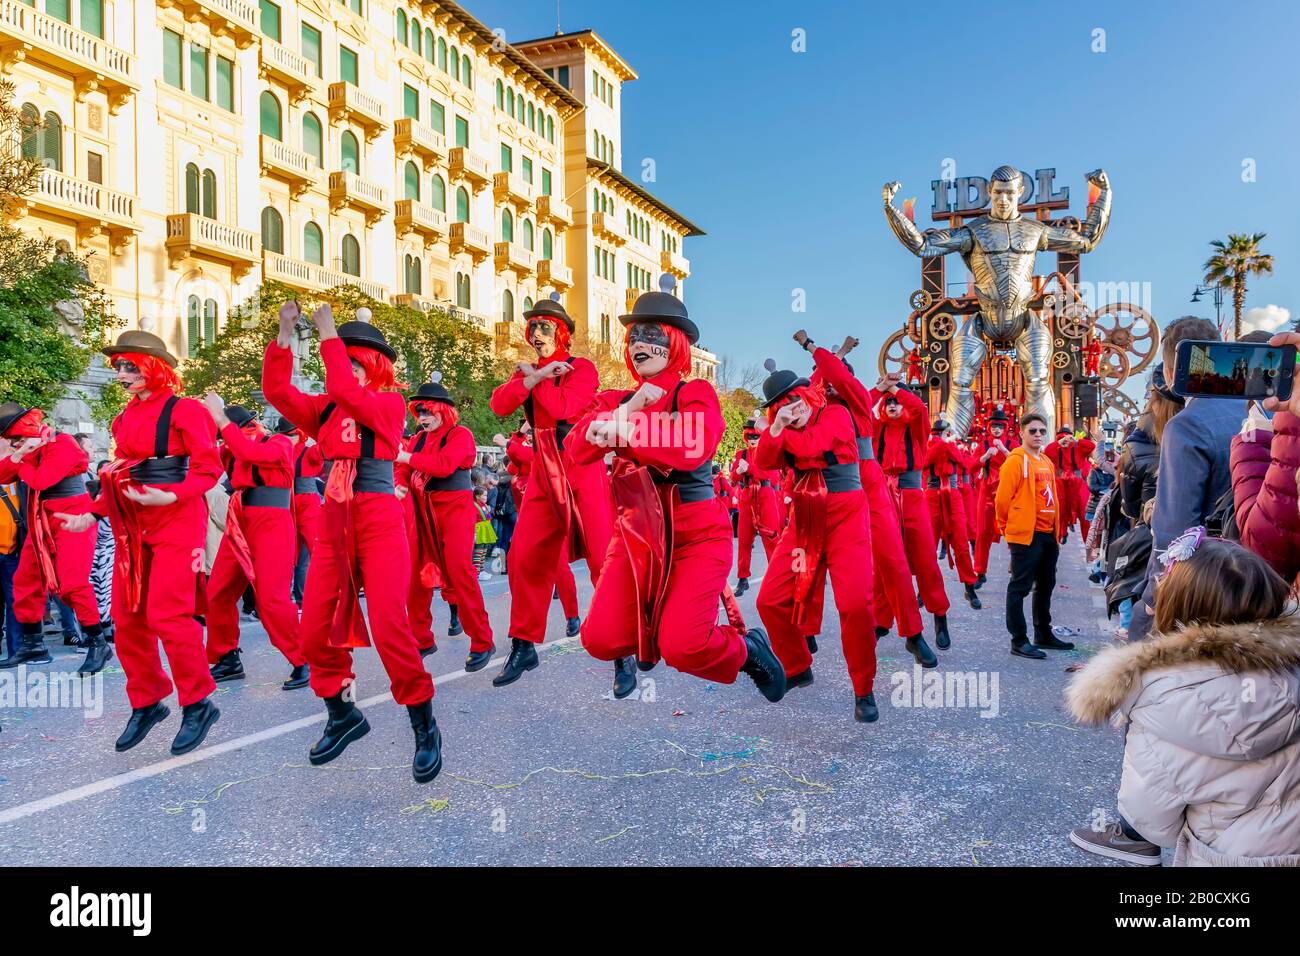 Figuras enmascaradas bailando en la calle con el flotador alegórico "Idol"  en el fondo, Carnaval de Viareggio, Italia Fotografía de stock - Alamy